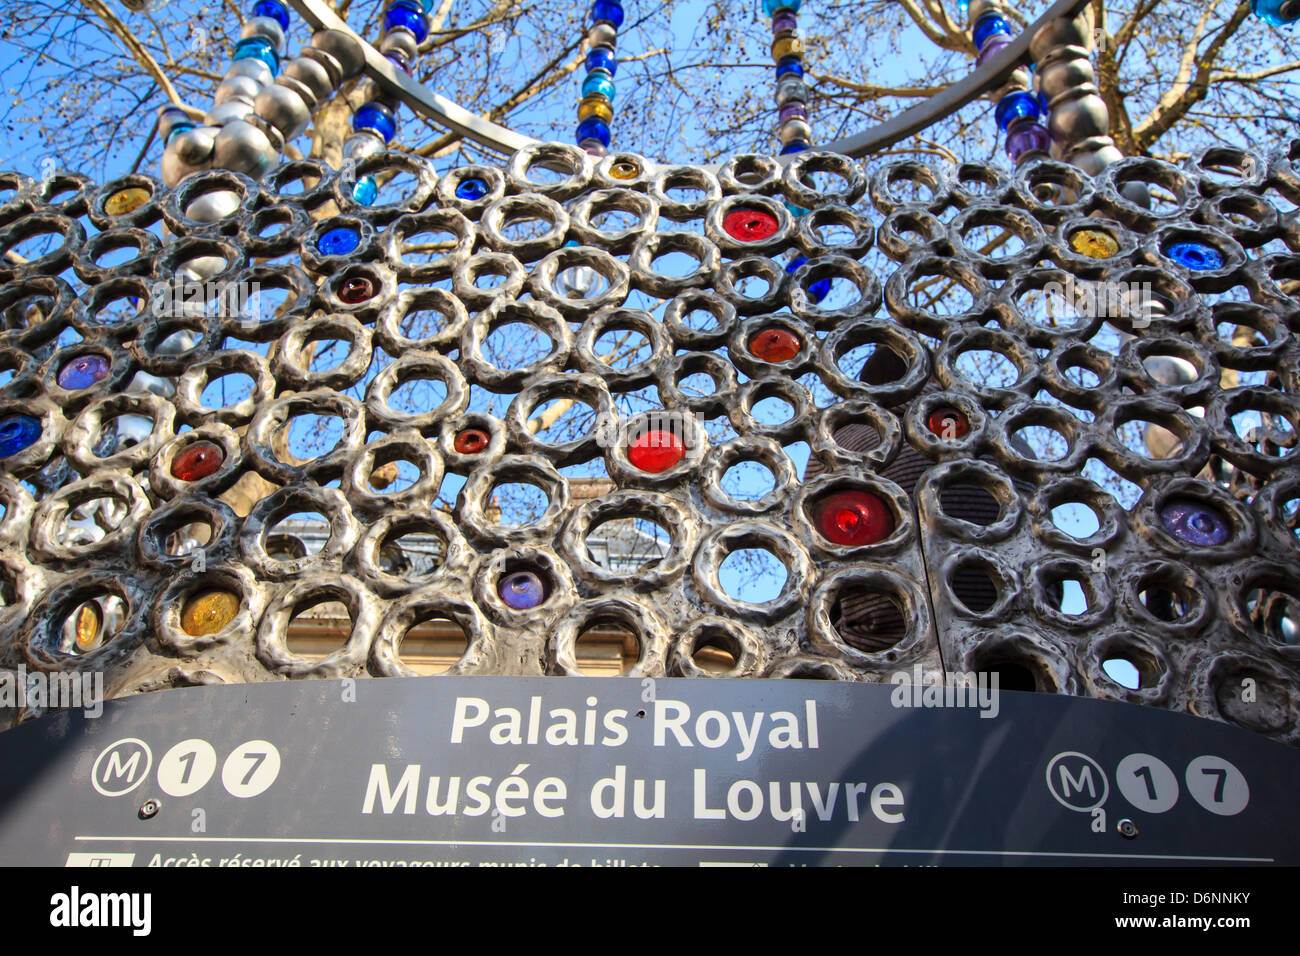 Palais Royal subway entrance, place Colette, Paris, France Stock Photo